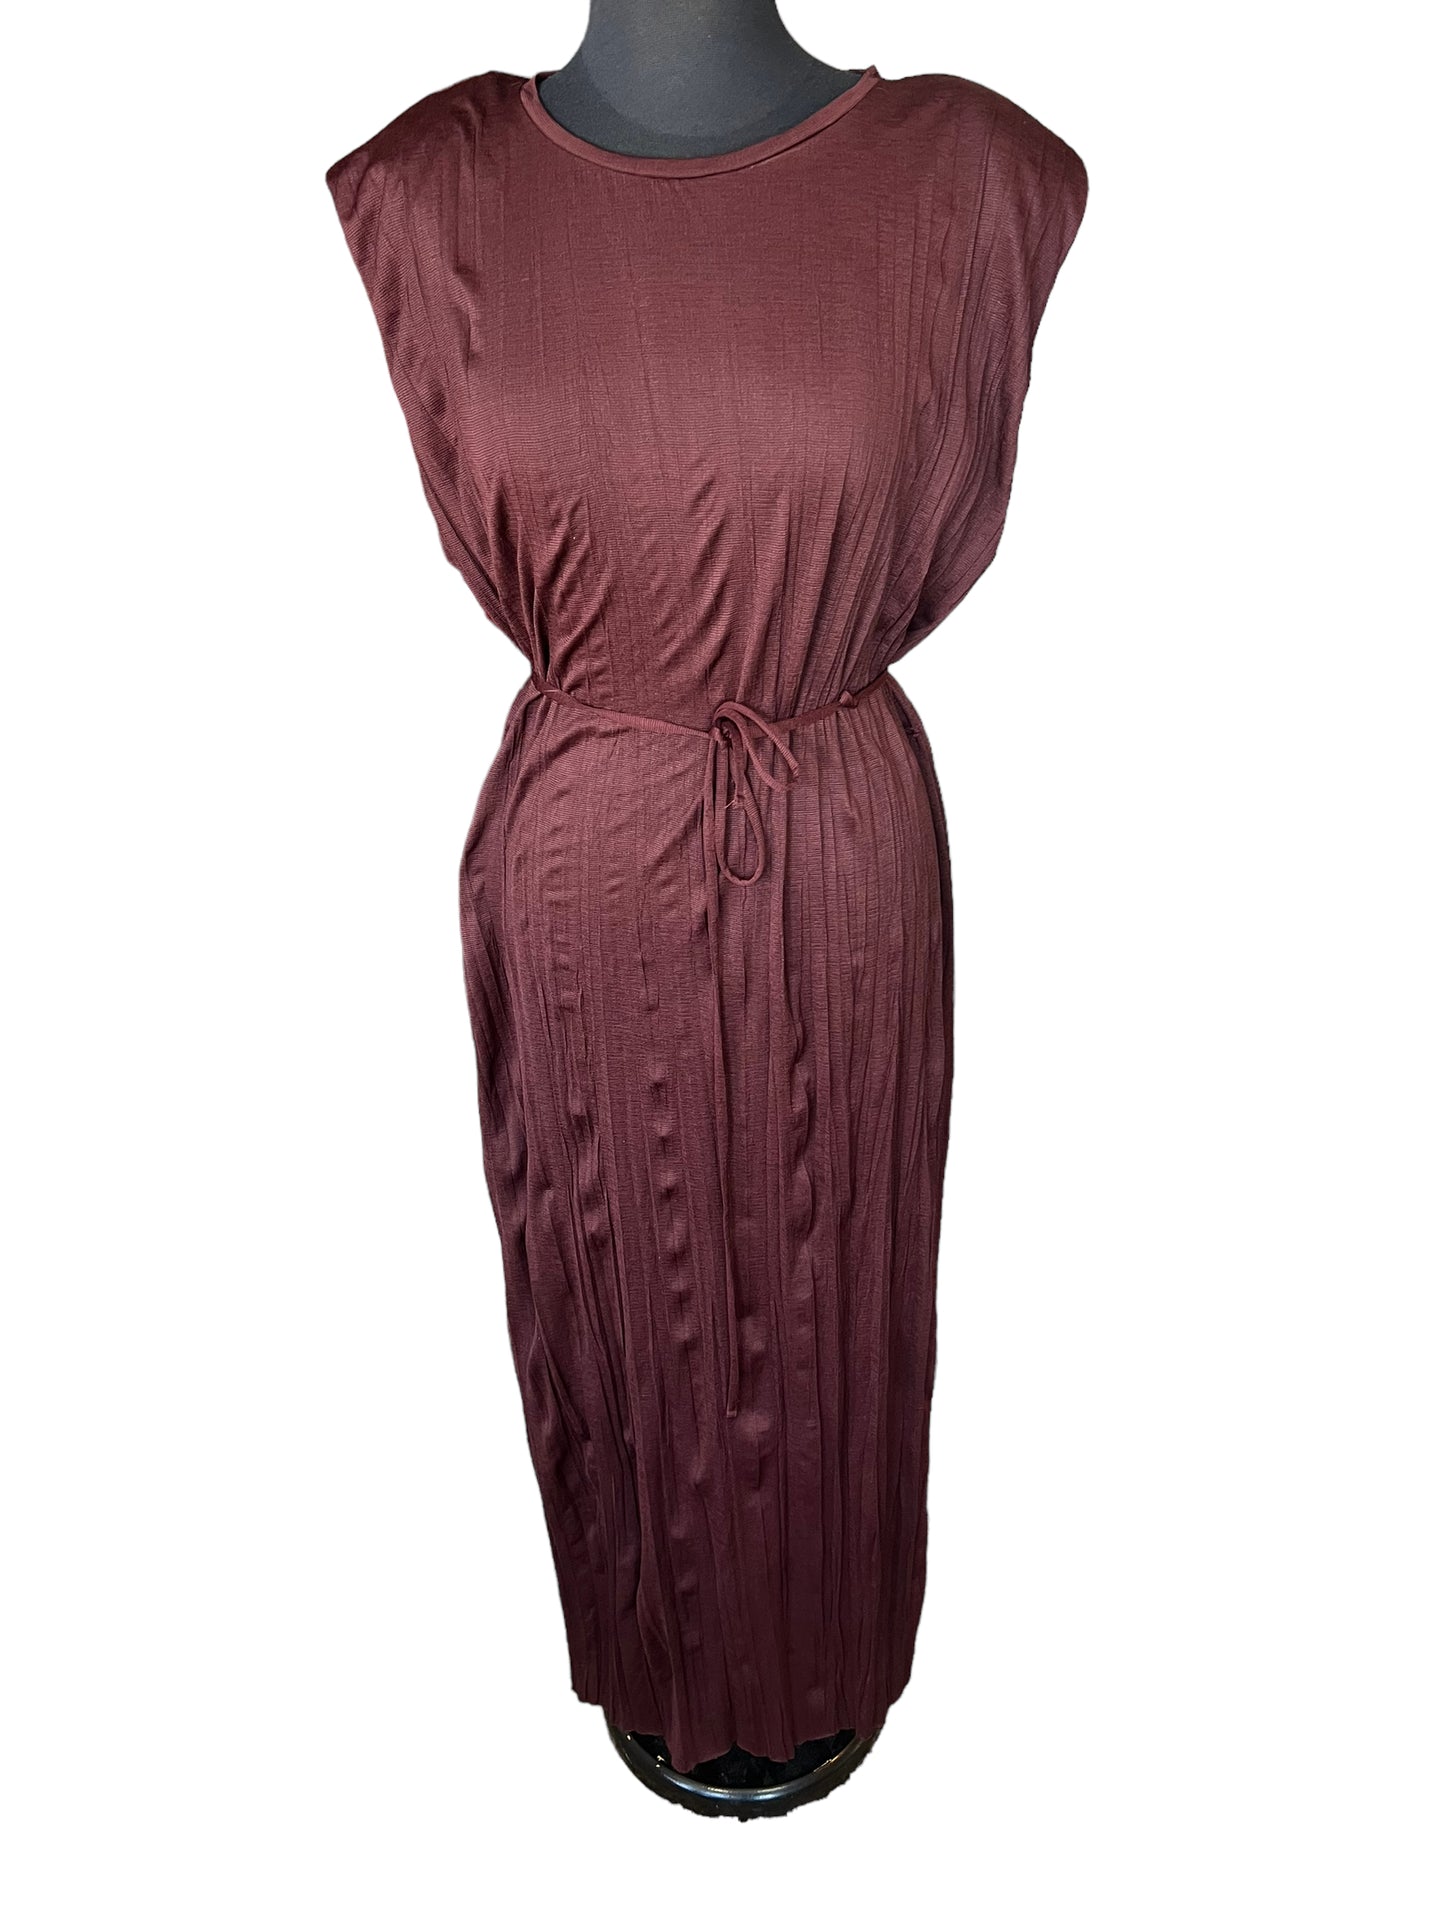 Zara Burgundy Dress